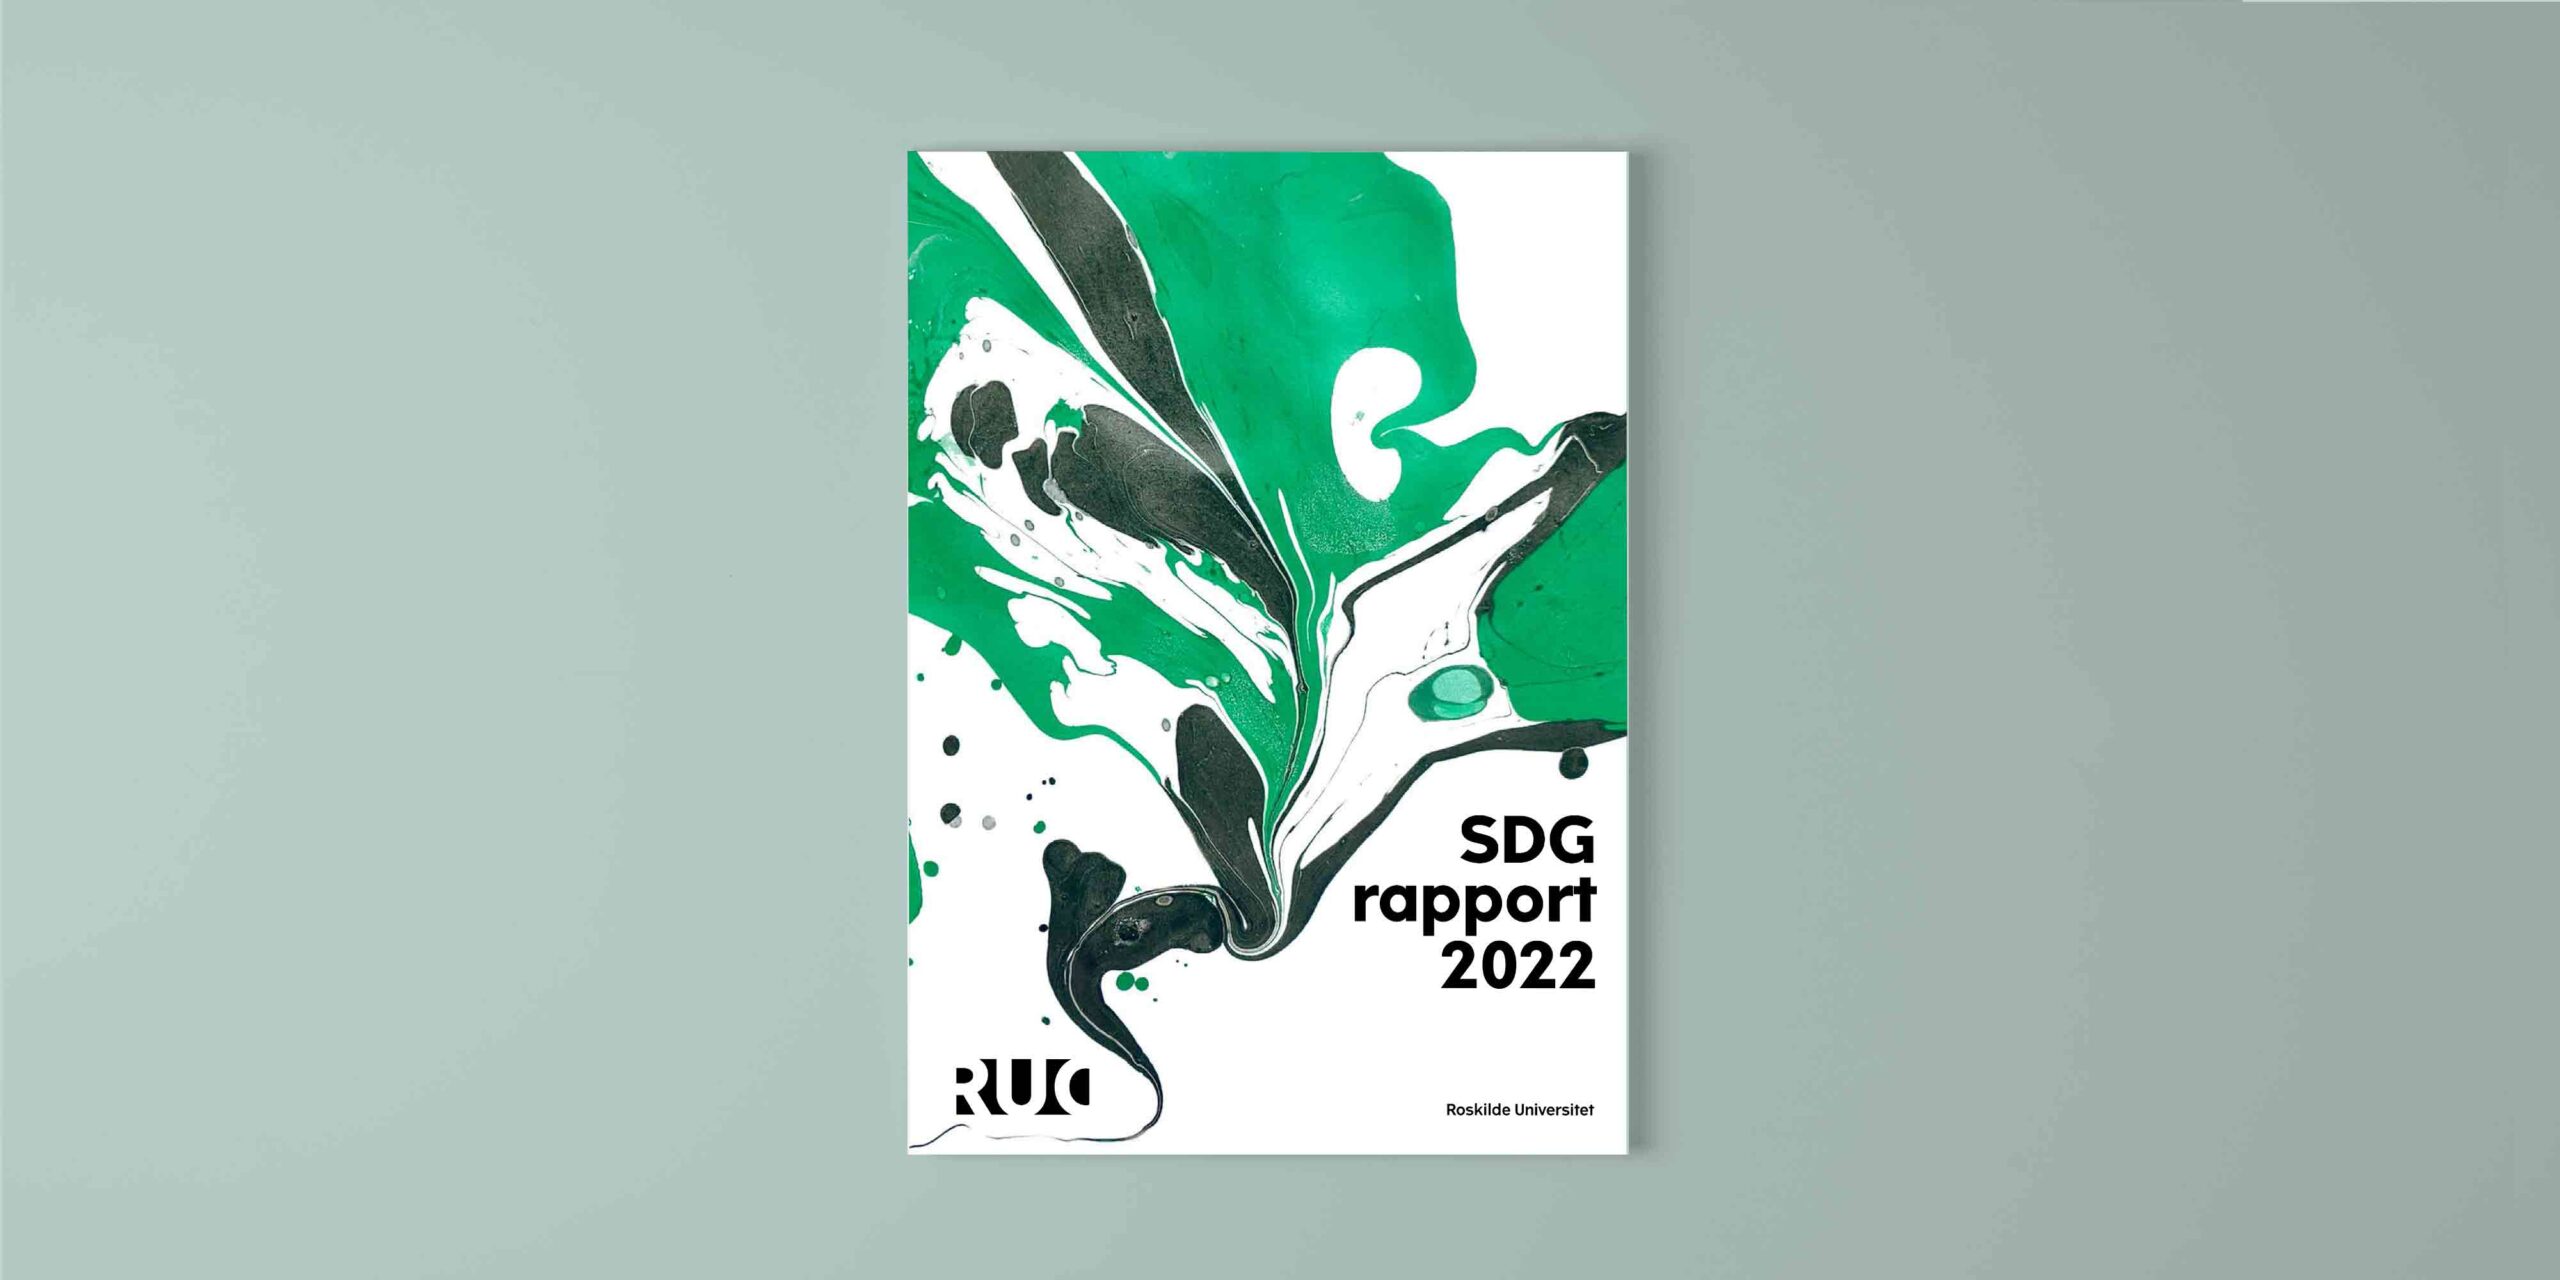 Forside af SDG-rapport 2022, lavet for Roskilde Universitet